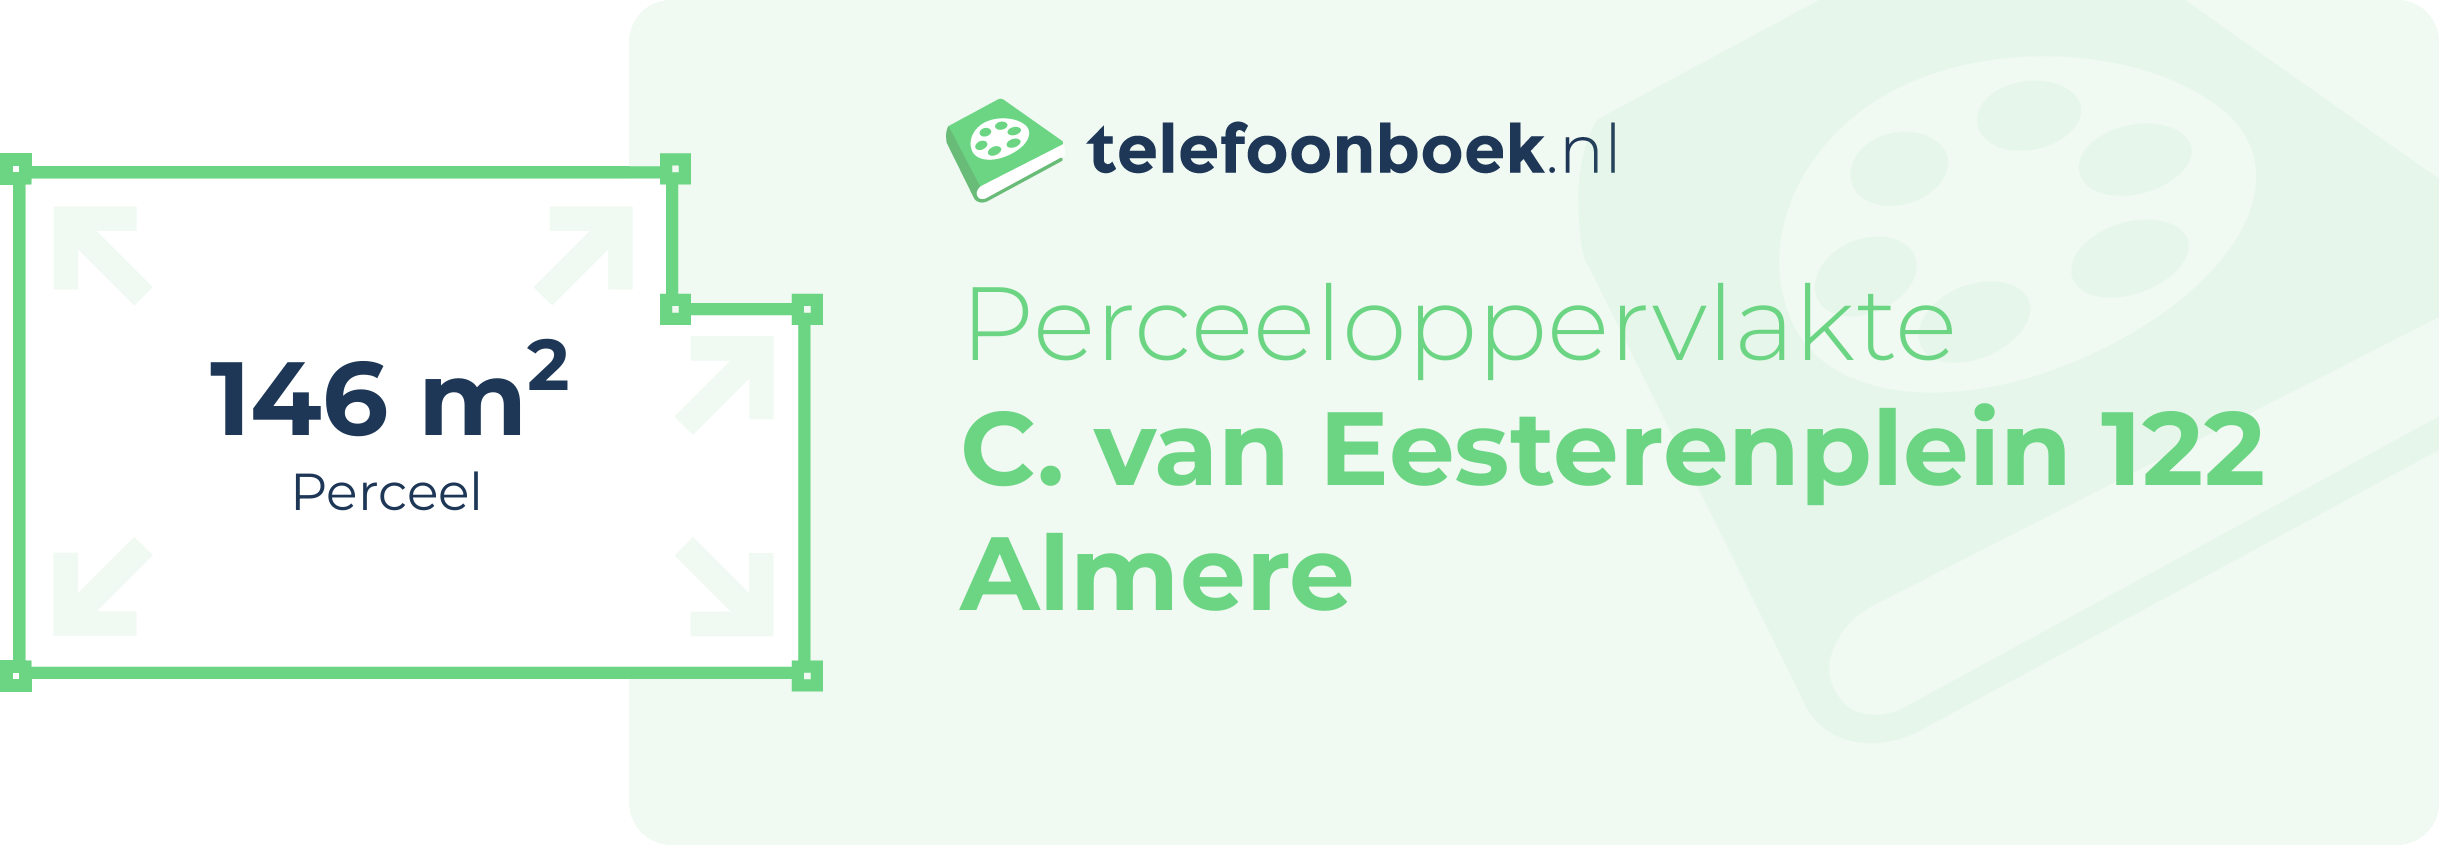 Perceeloppervlakte C. Van Eesterenplein 122 Almere